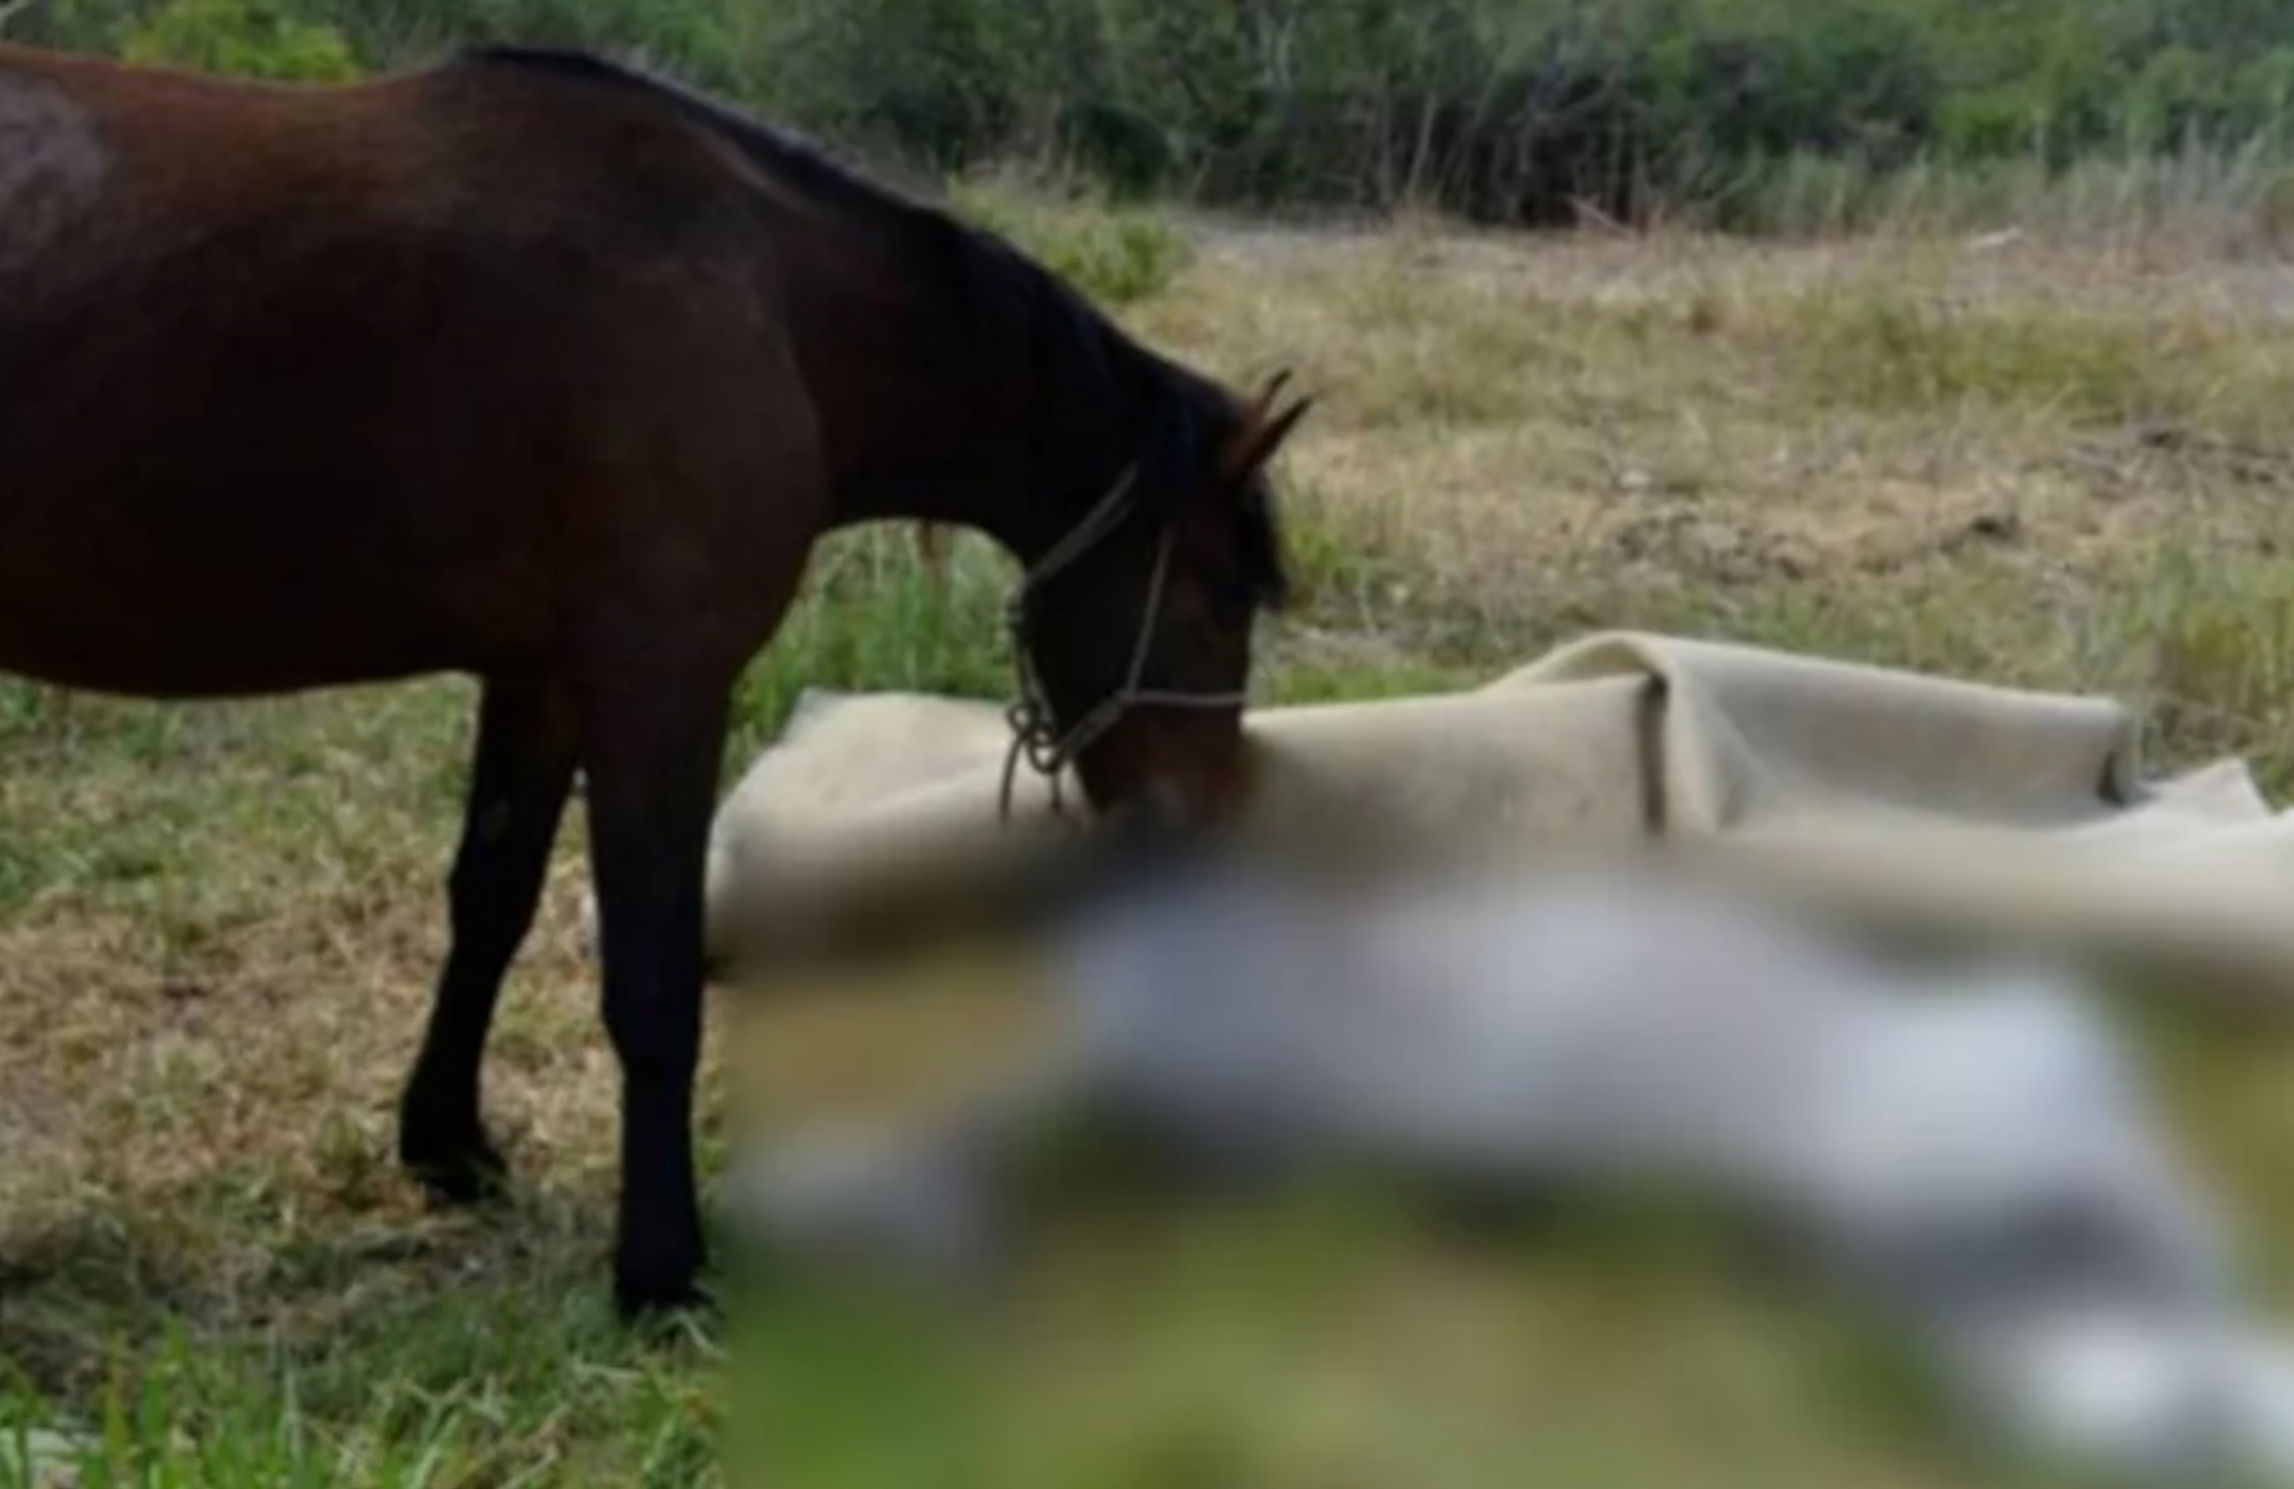 Κακοποίηση ζώου: Άλογο πνίγηκε από το σχοινί που ήταν δεμένο – Συνελήφθη ο ιδιοκτήτης